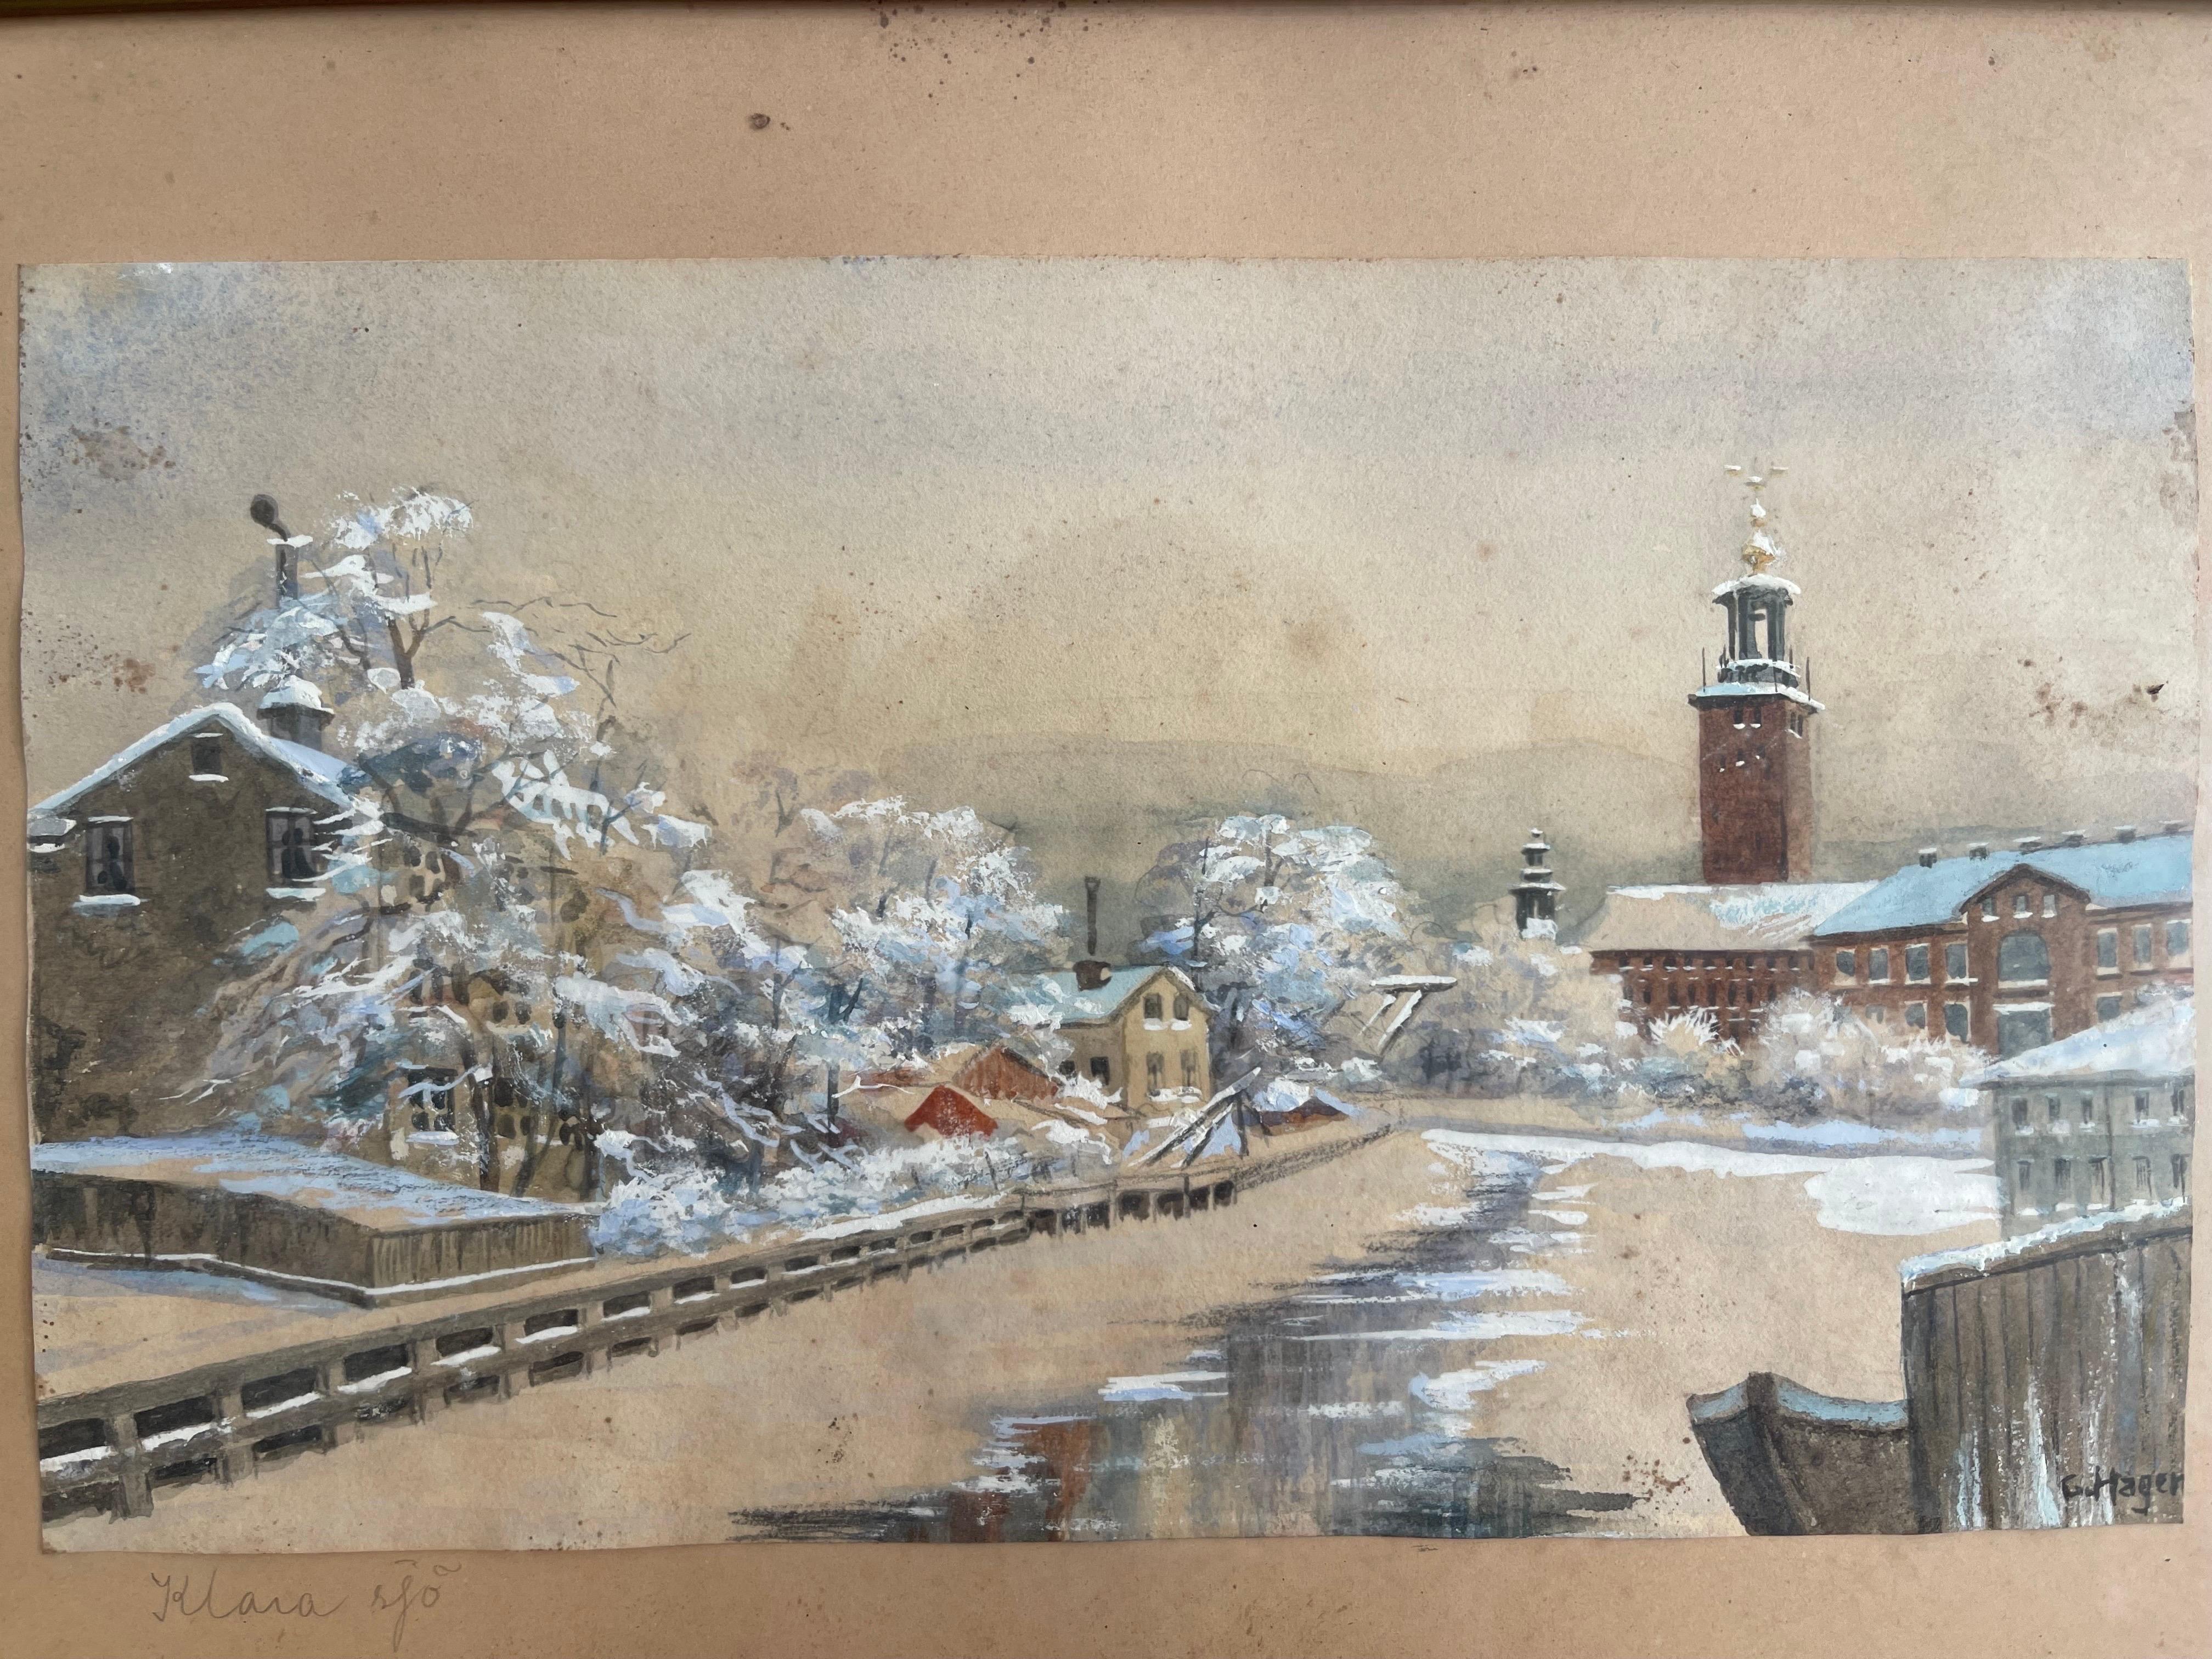 Cette aquarelle suédoise de Klara sjö, un canal du centre de Stockholm, probablement une aquarelle sur papier des années 1920/30, œuvre d'art de G ou C Hagen, artiste inconnu, offre une belle scène de berge hivernale, avec des tons bruns et neigeux